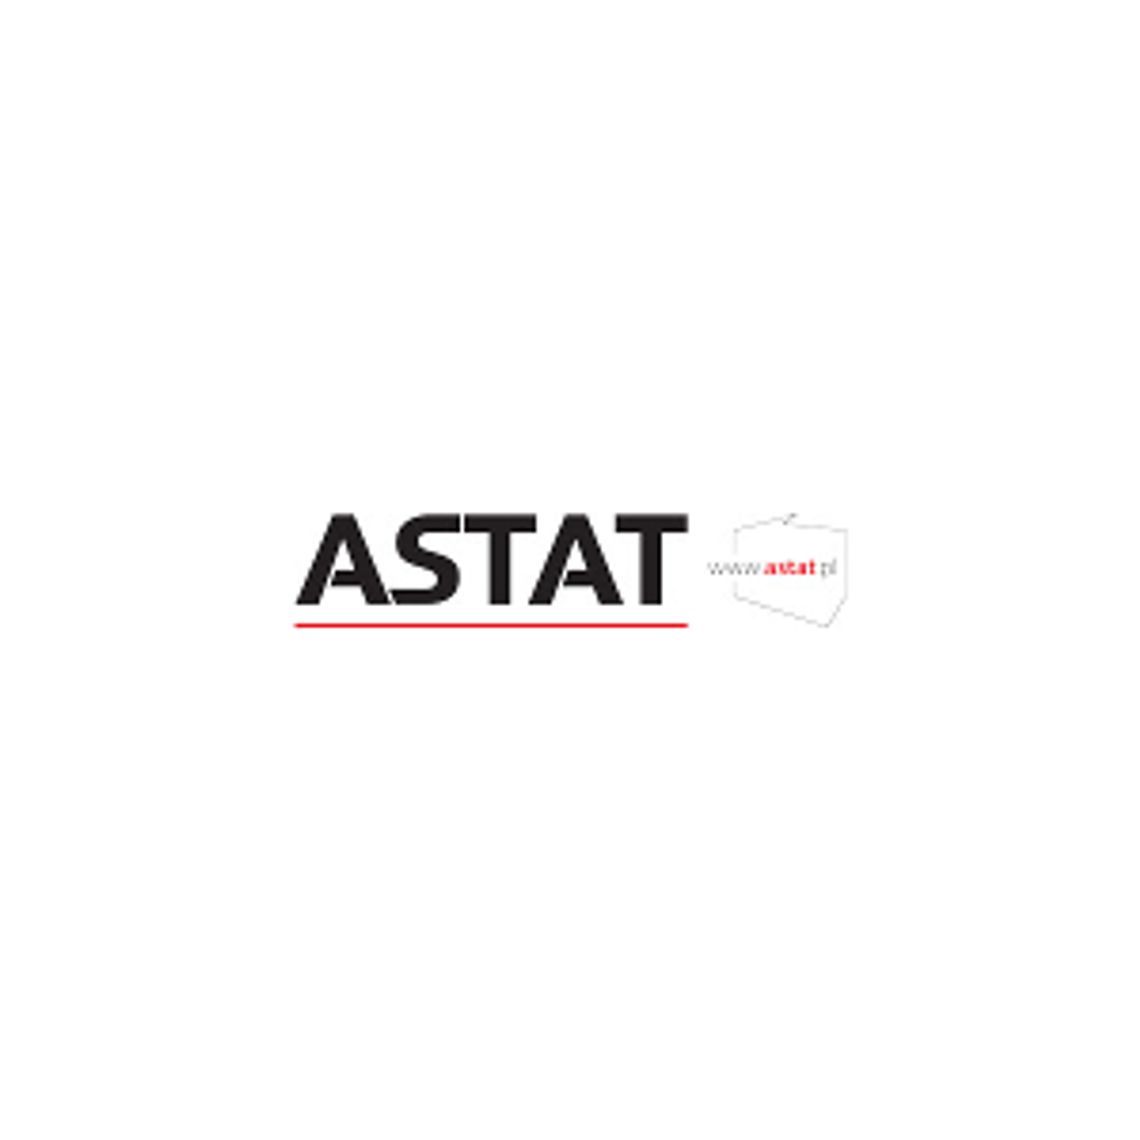 Dostawca nowoczesnych rozwiązań dla energetyki - Grupa ASTAT